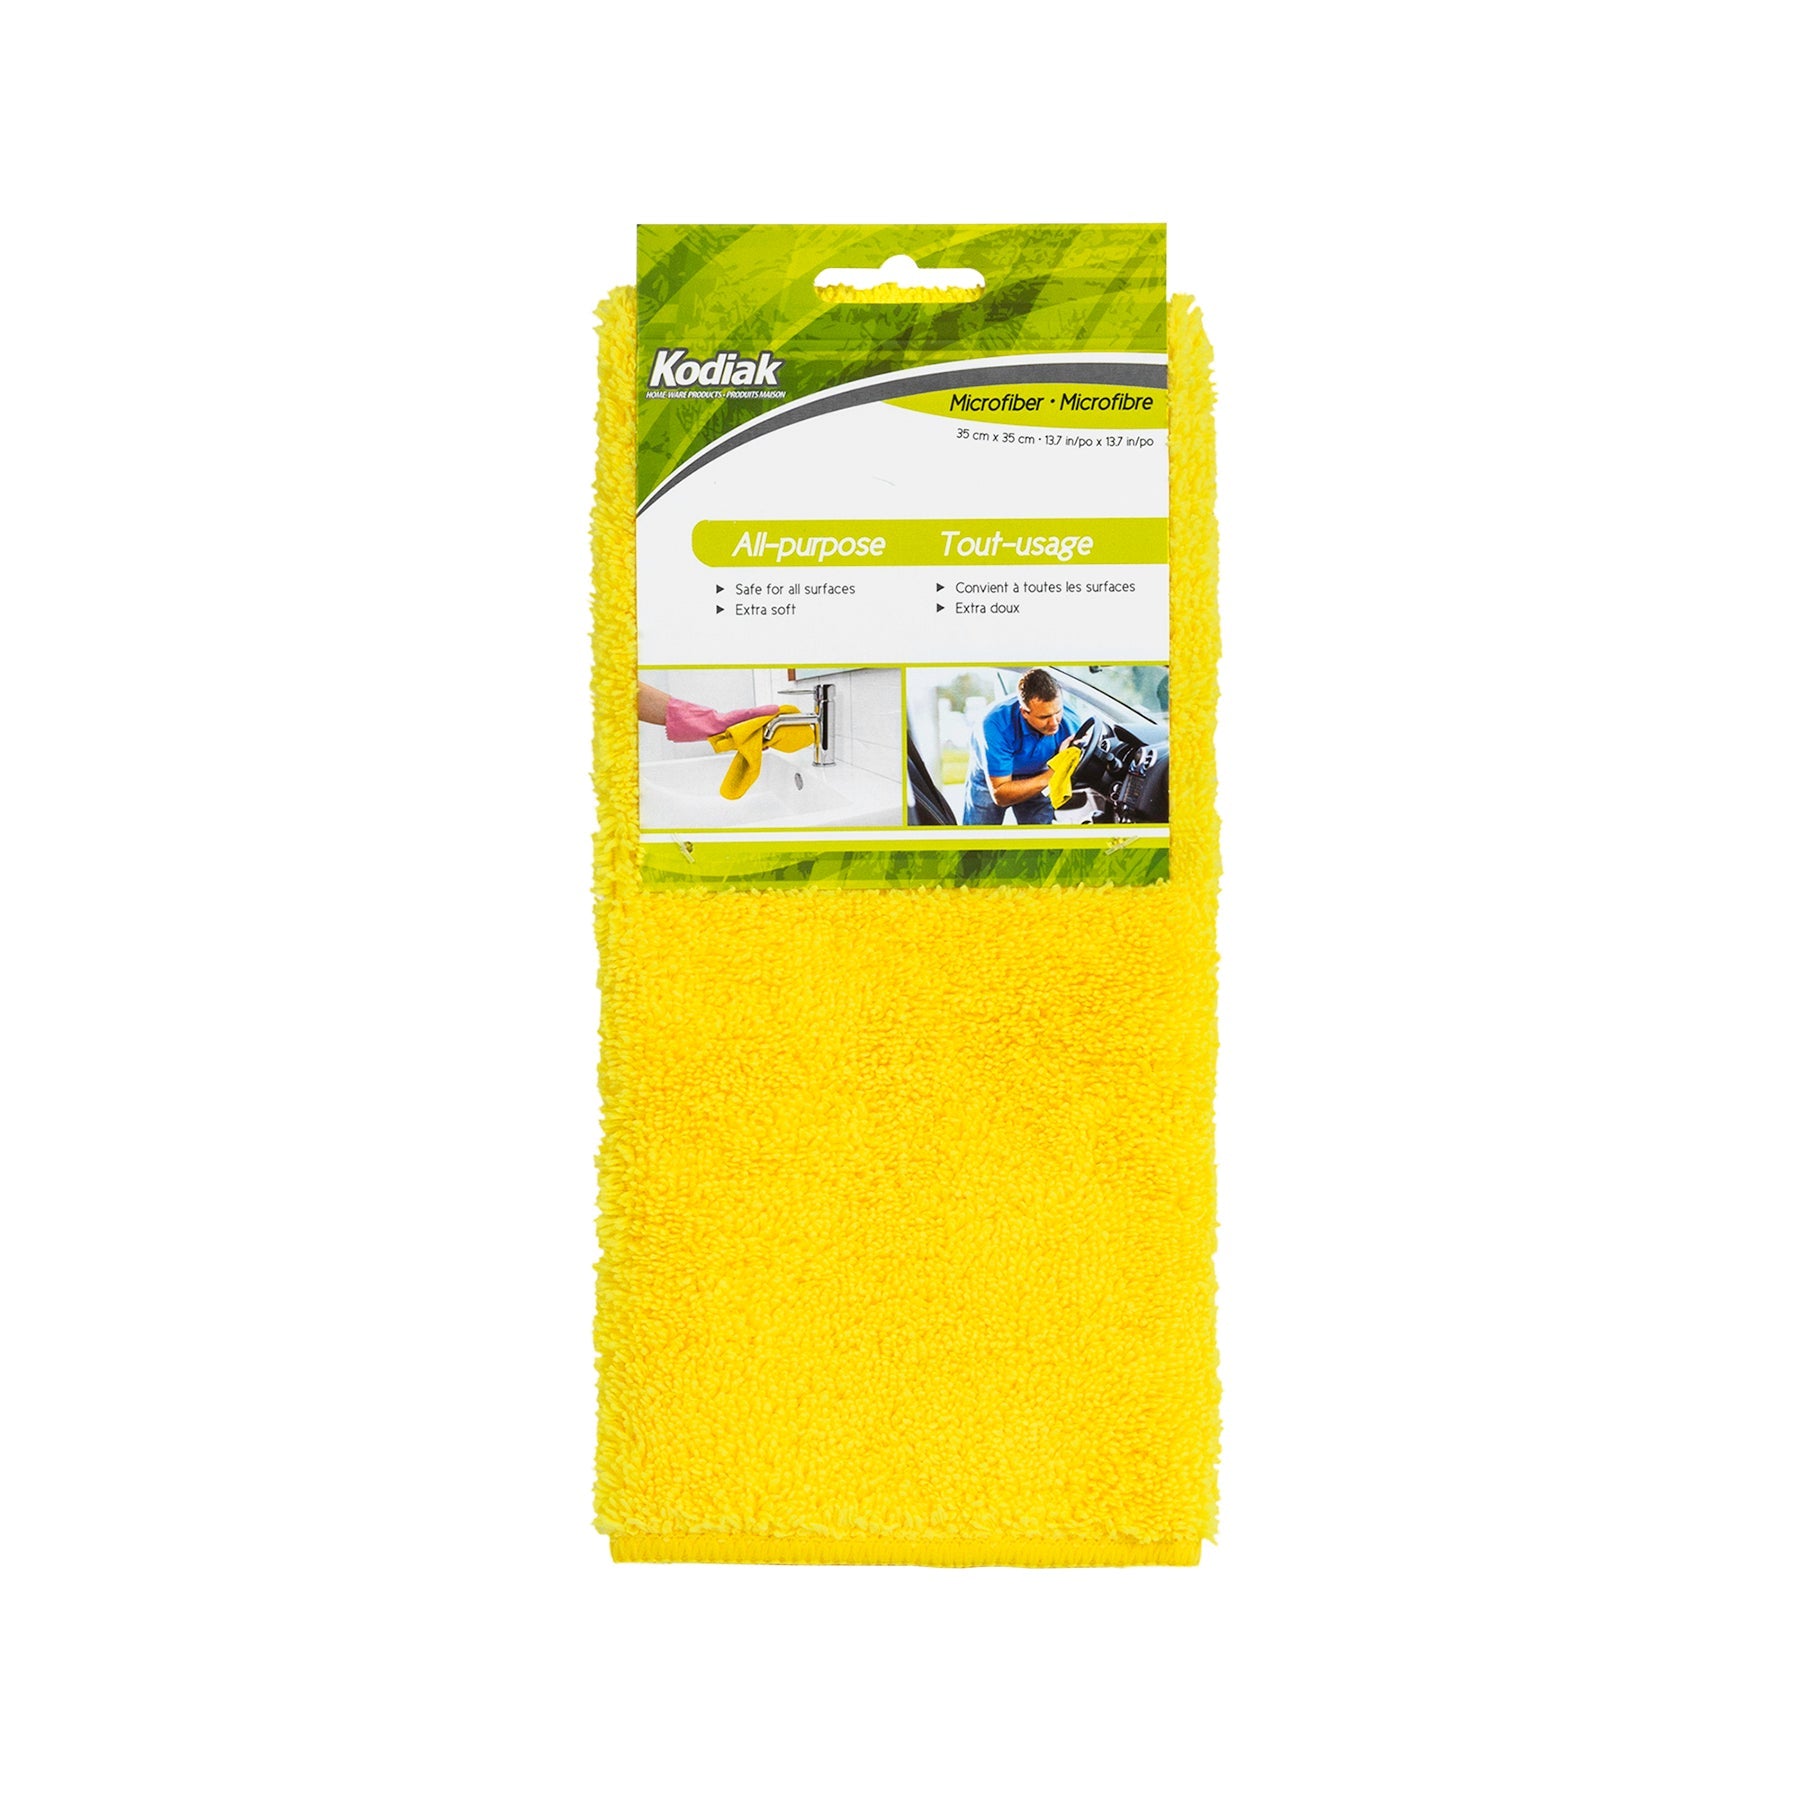 Kodiak Microfiber Yellow All-Purpose Cloth 13.7x13.7in